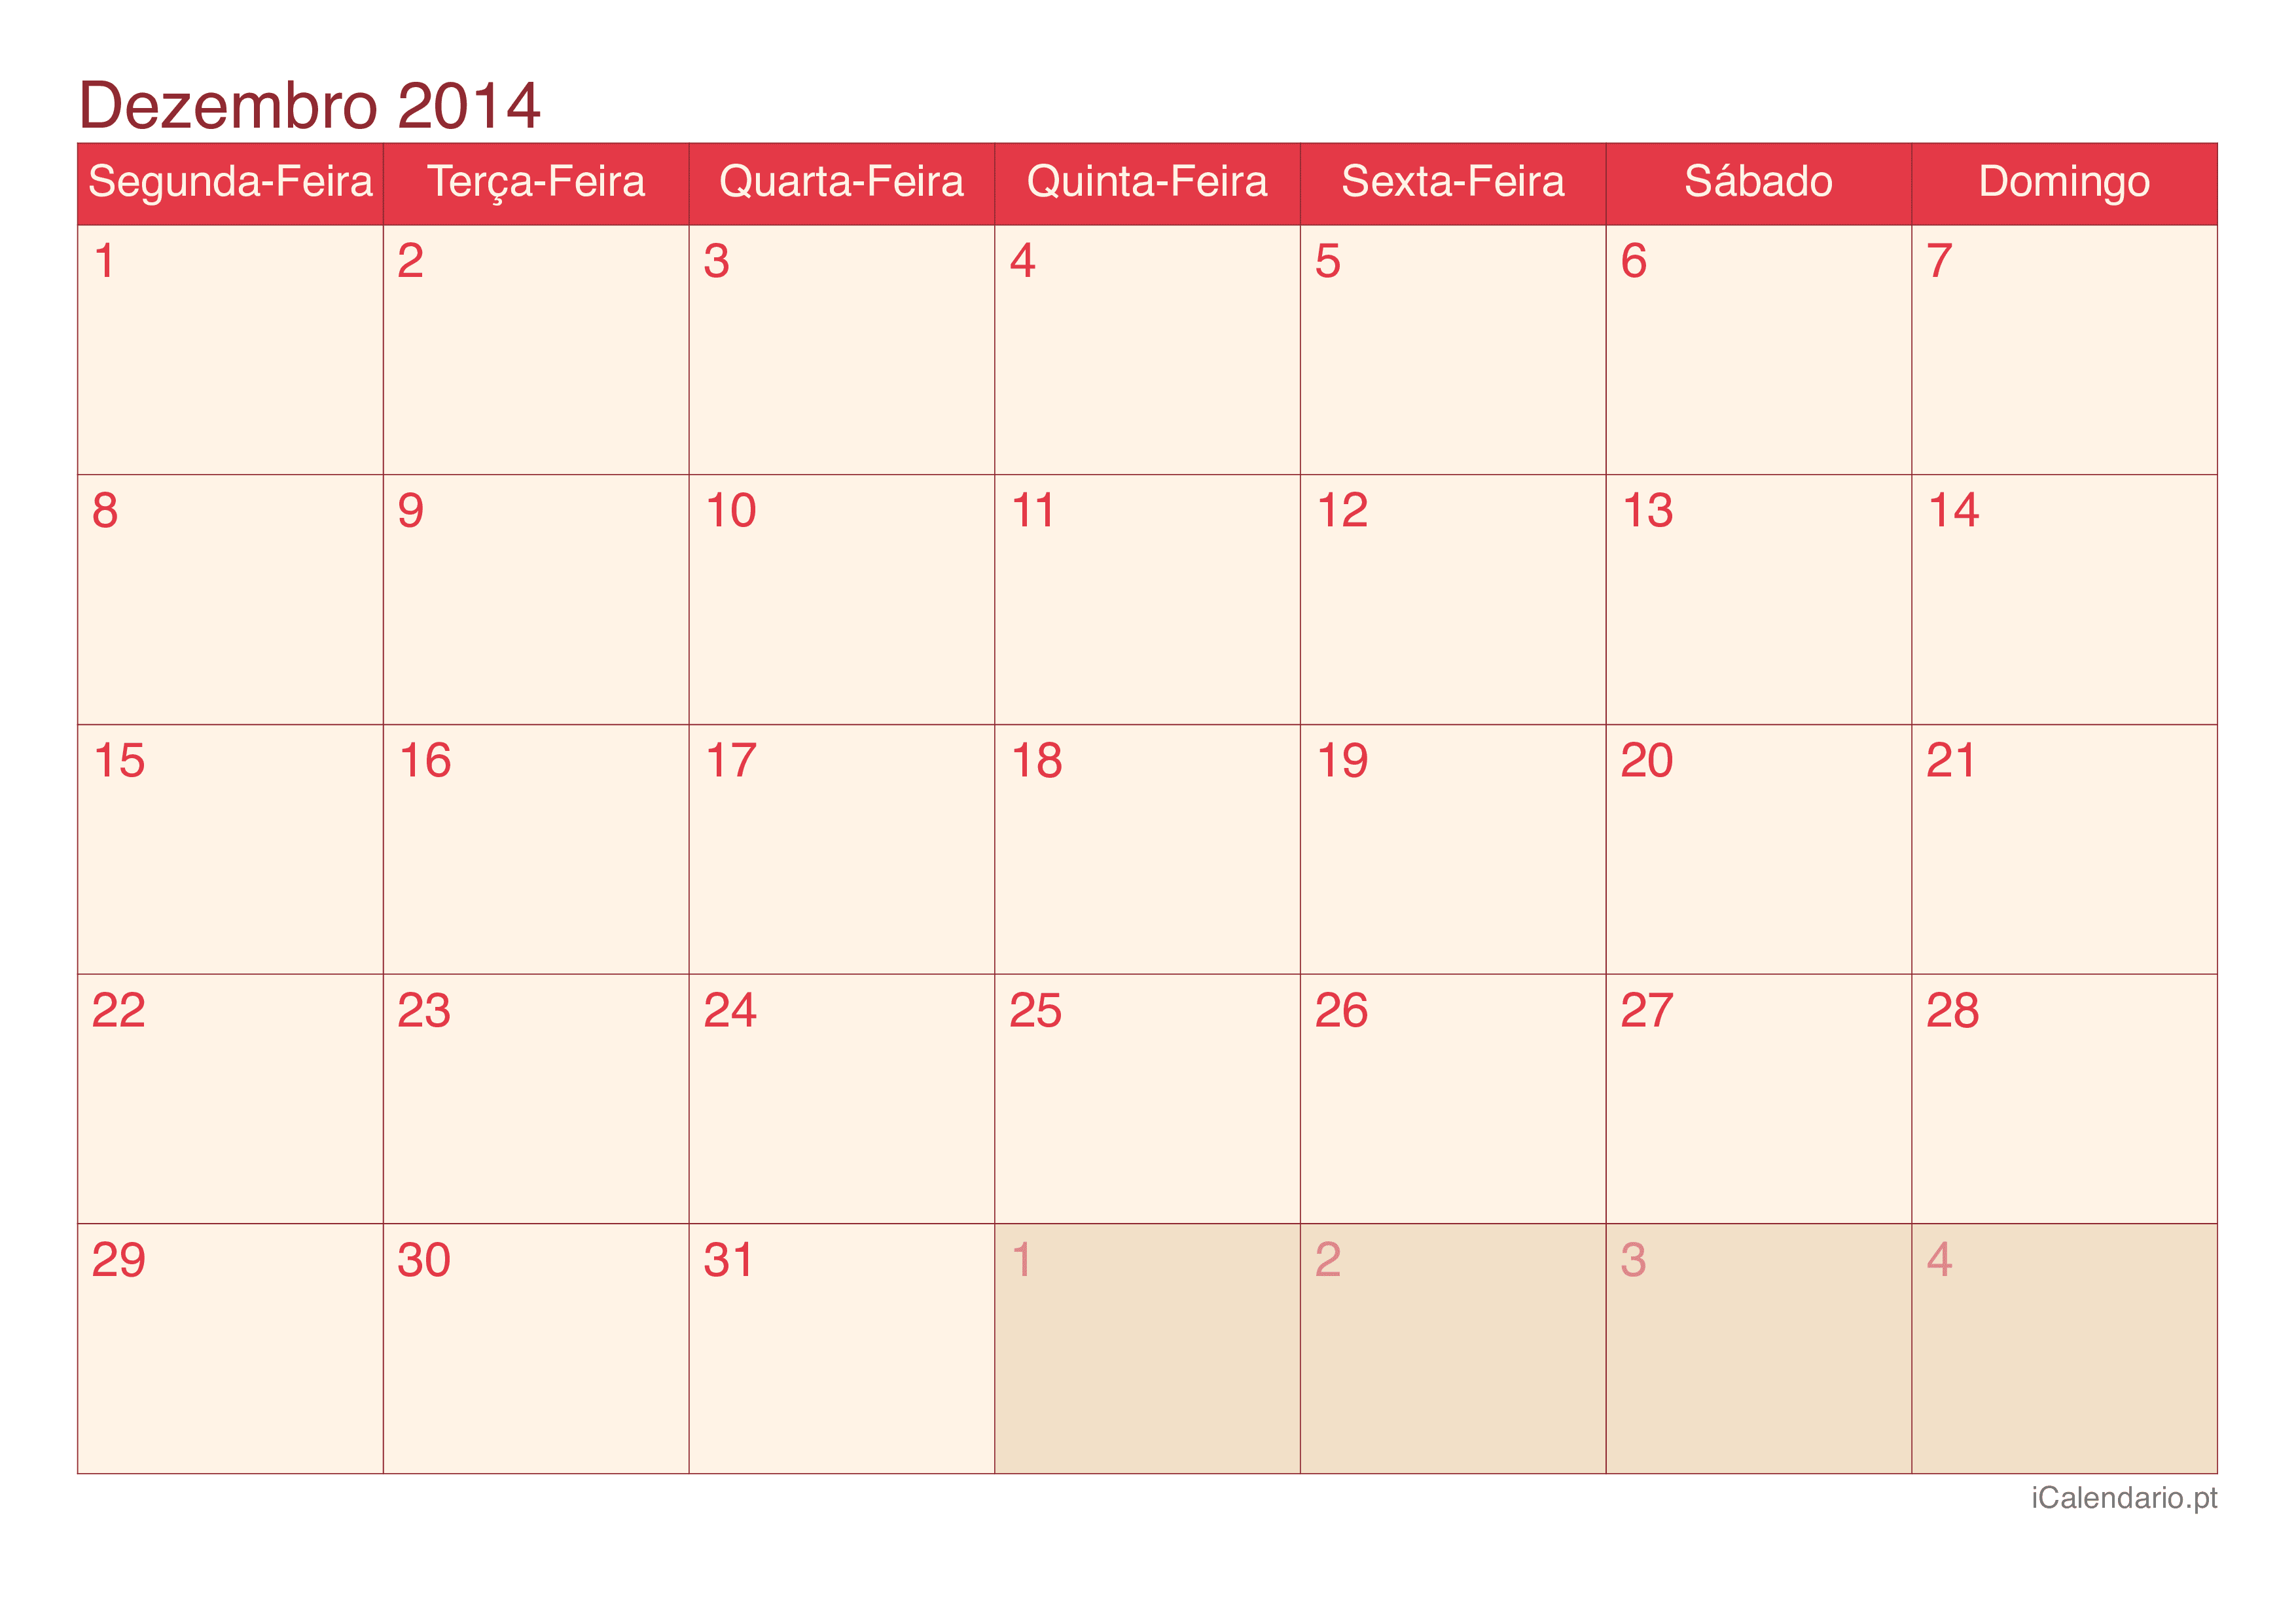 Calendário de dezembro 2014 - Cherry